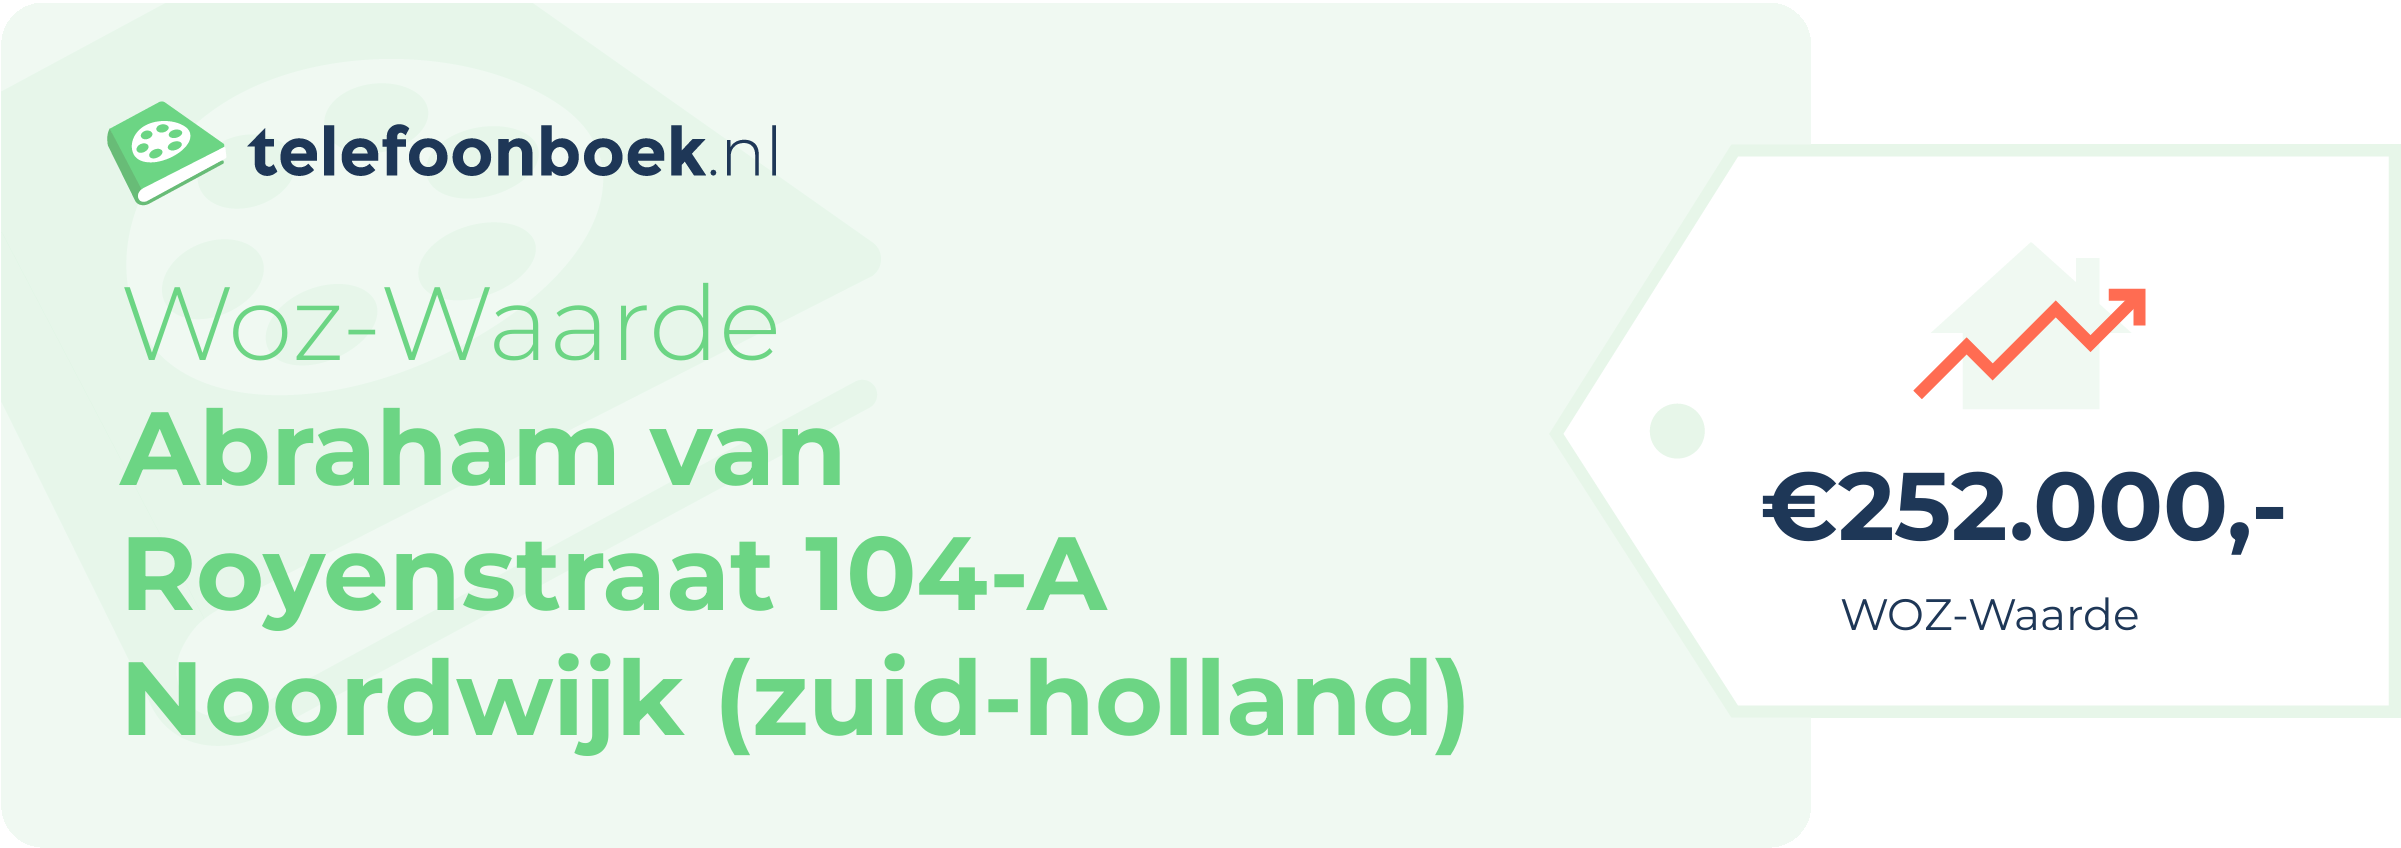 WOZ-waarde Abraham Van Royenstraat 104-A Noordwijk (Zuid-Holland)